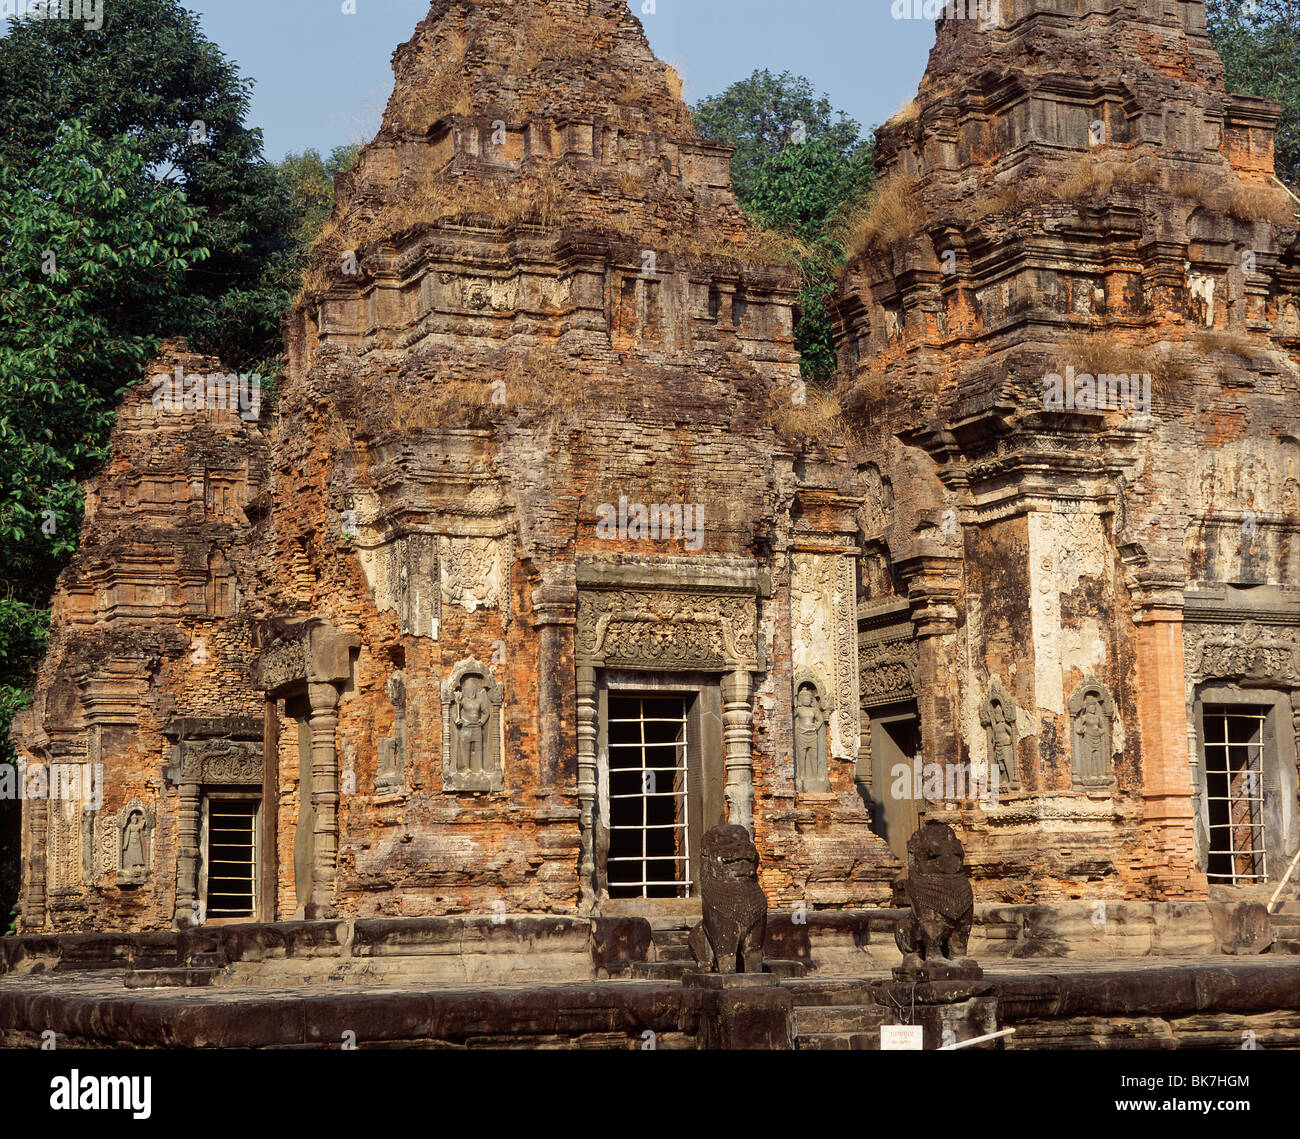 Lolei databili tra la fine del IX secolo, Roluos, vicino a Siem Reap, Cambogia, Indocina, Asia sud-orientale, Asia Foto Stock